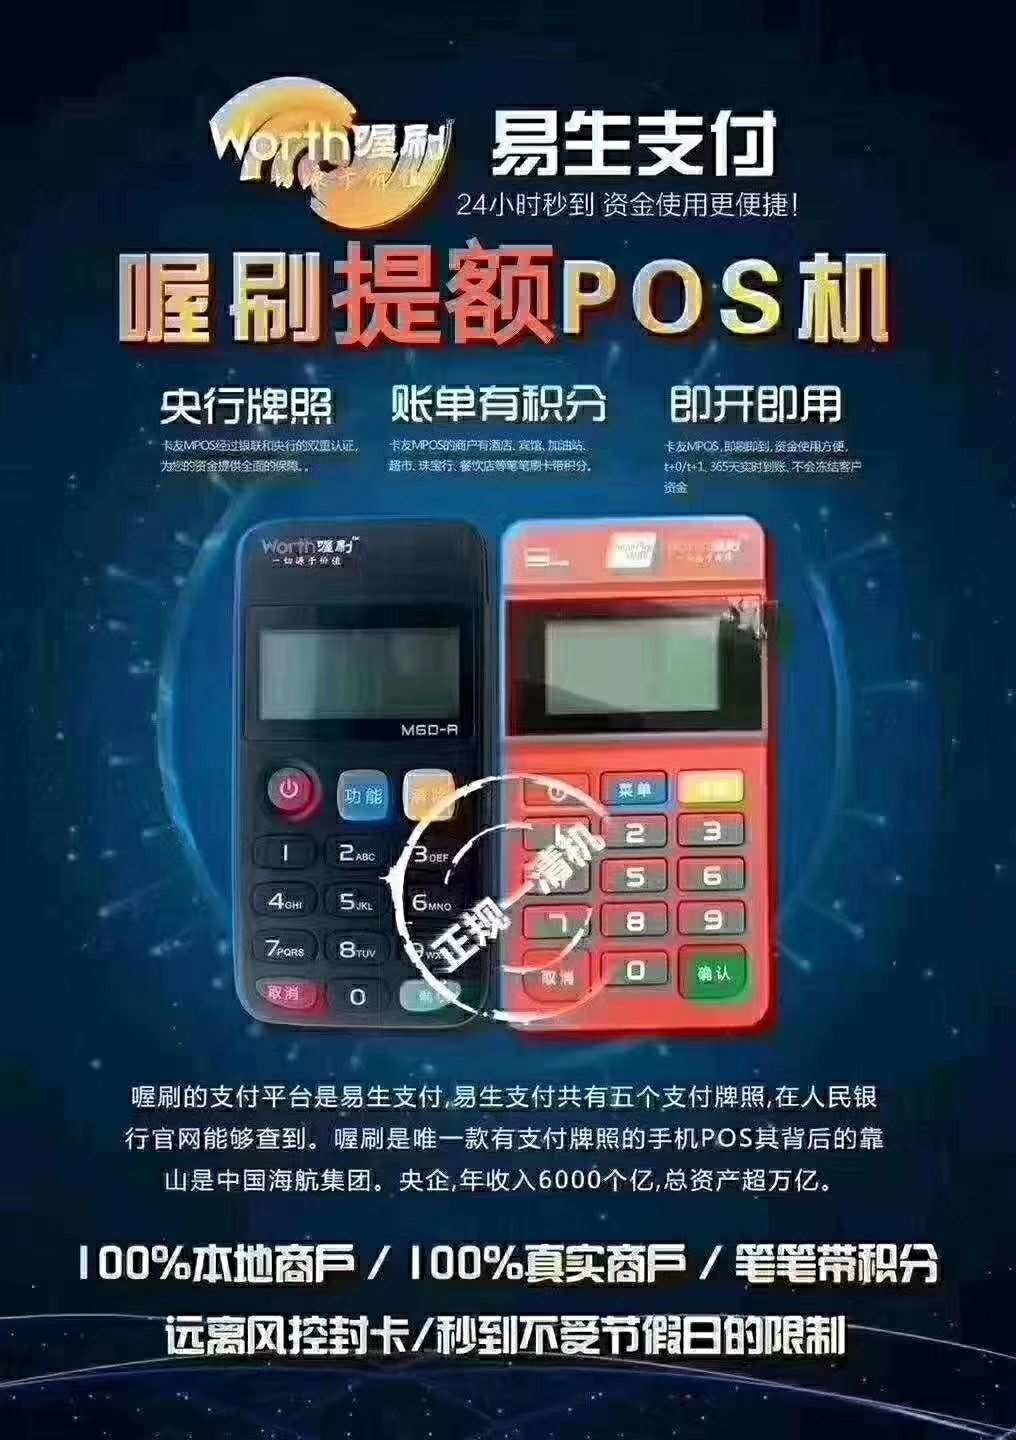 点刷pos机是什么 POS机是绑定自己的银行卡吗？刷自己的大额信用卡对征信会有什么影响吗？